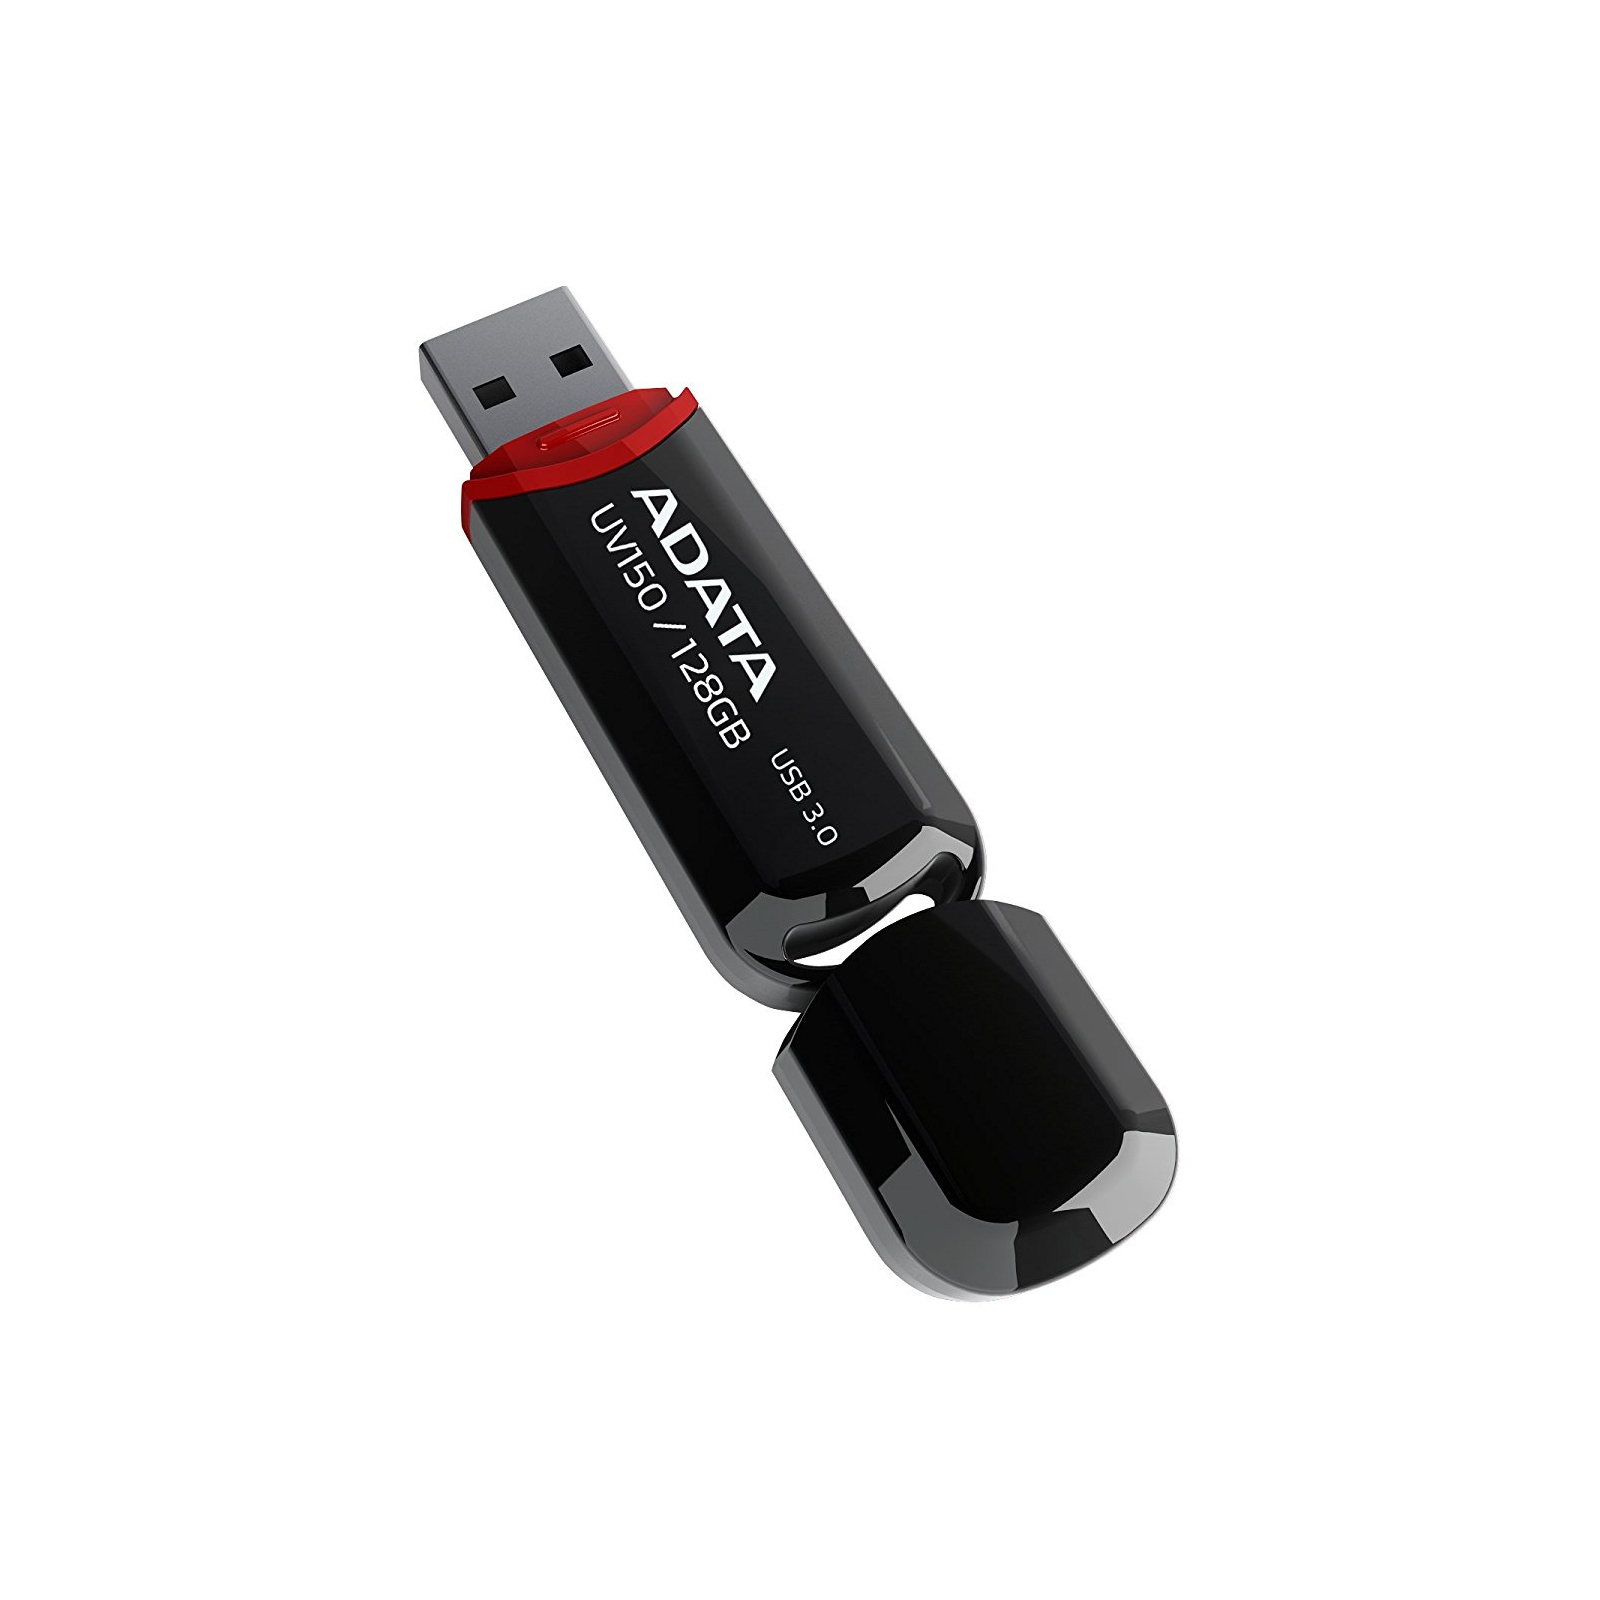 USB флеш накопитель ADATA 16GB UV150 Red USB 3.0 (AUV150-16G-RRD) изображение 5